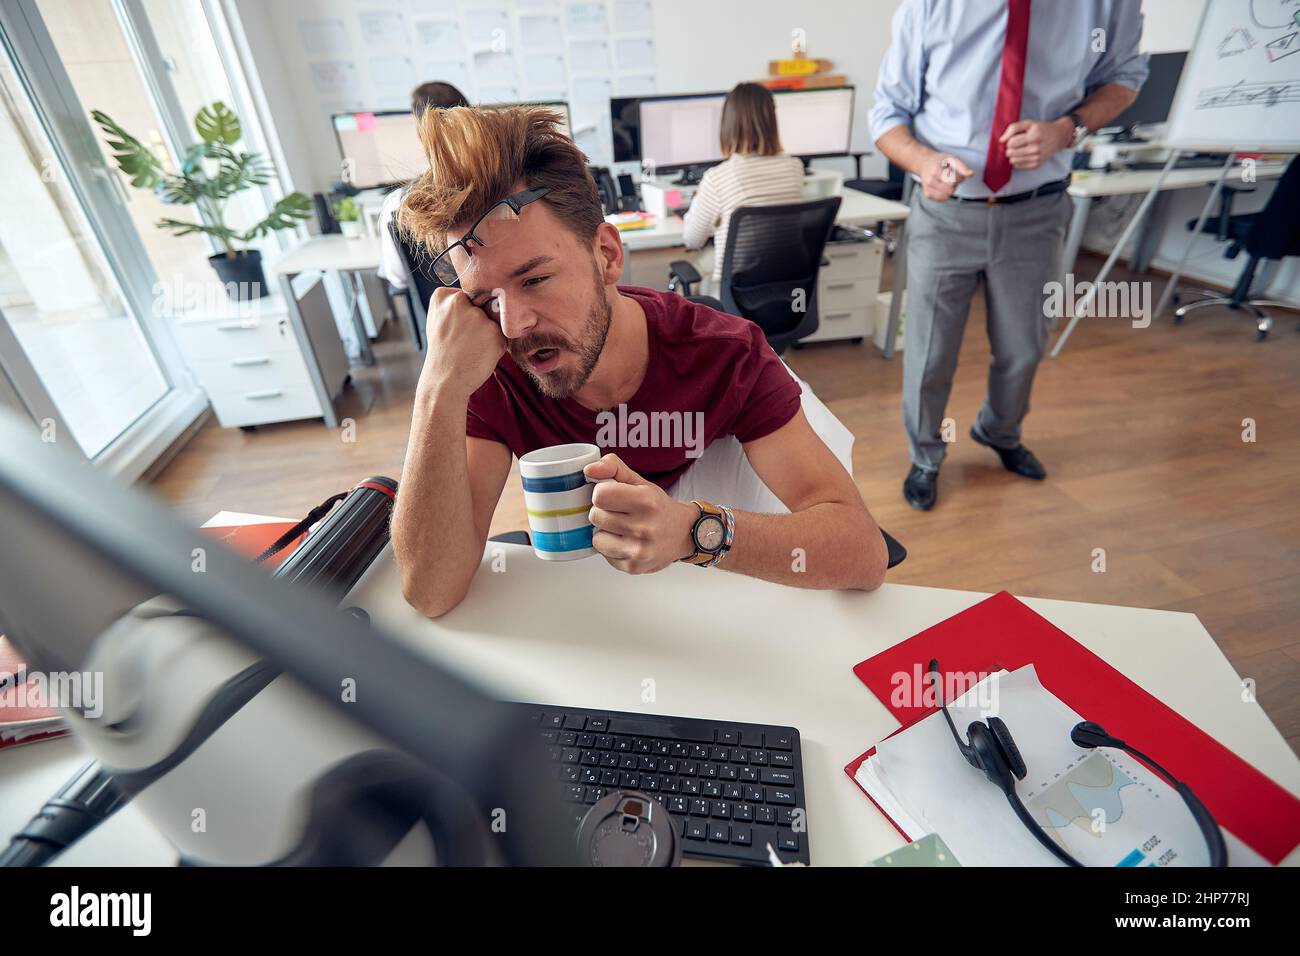 Un employé de sexe masculin fatigué s'est endormi tout en travaillant dans une atmosphère uniforme au bureau. Employés, travail, bureau Banque D'Images